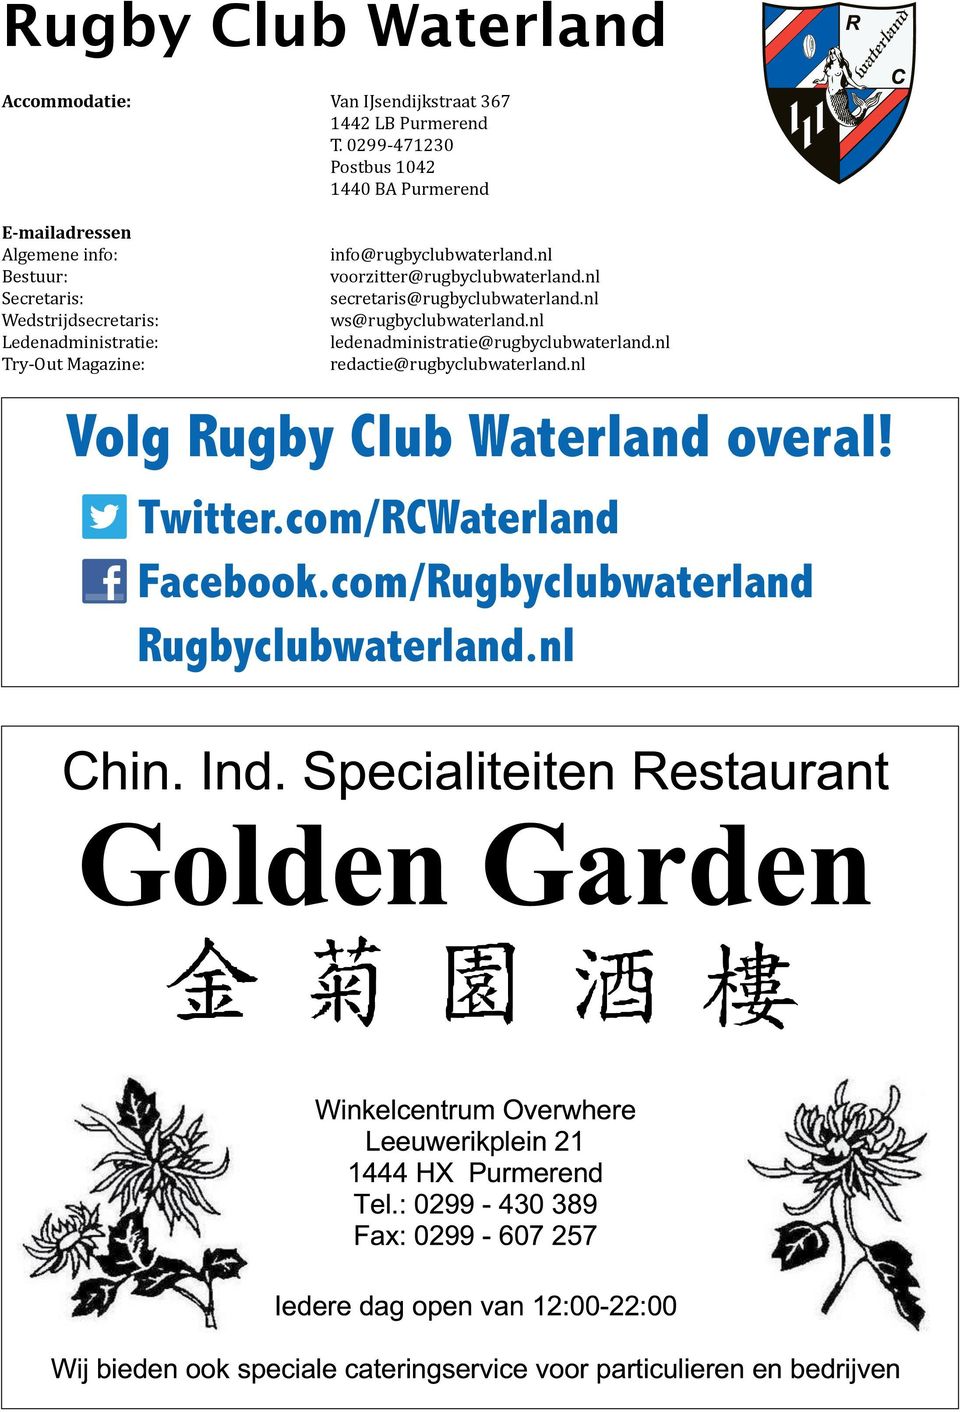 Ledenadministratie: Try-Out Magazine: info@rugbyclubwaterland.nl voorzitter@rugbyclubwaterland.nl secretaris@rugbyclubwaterland.